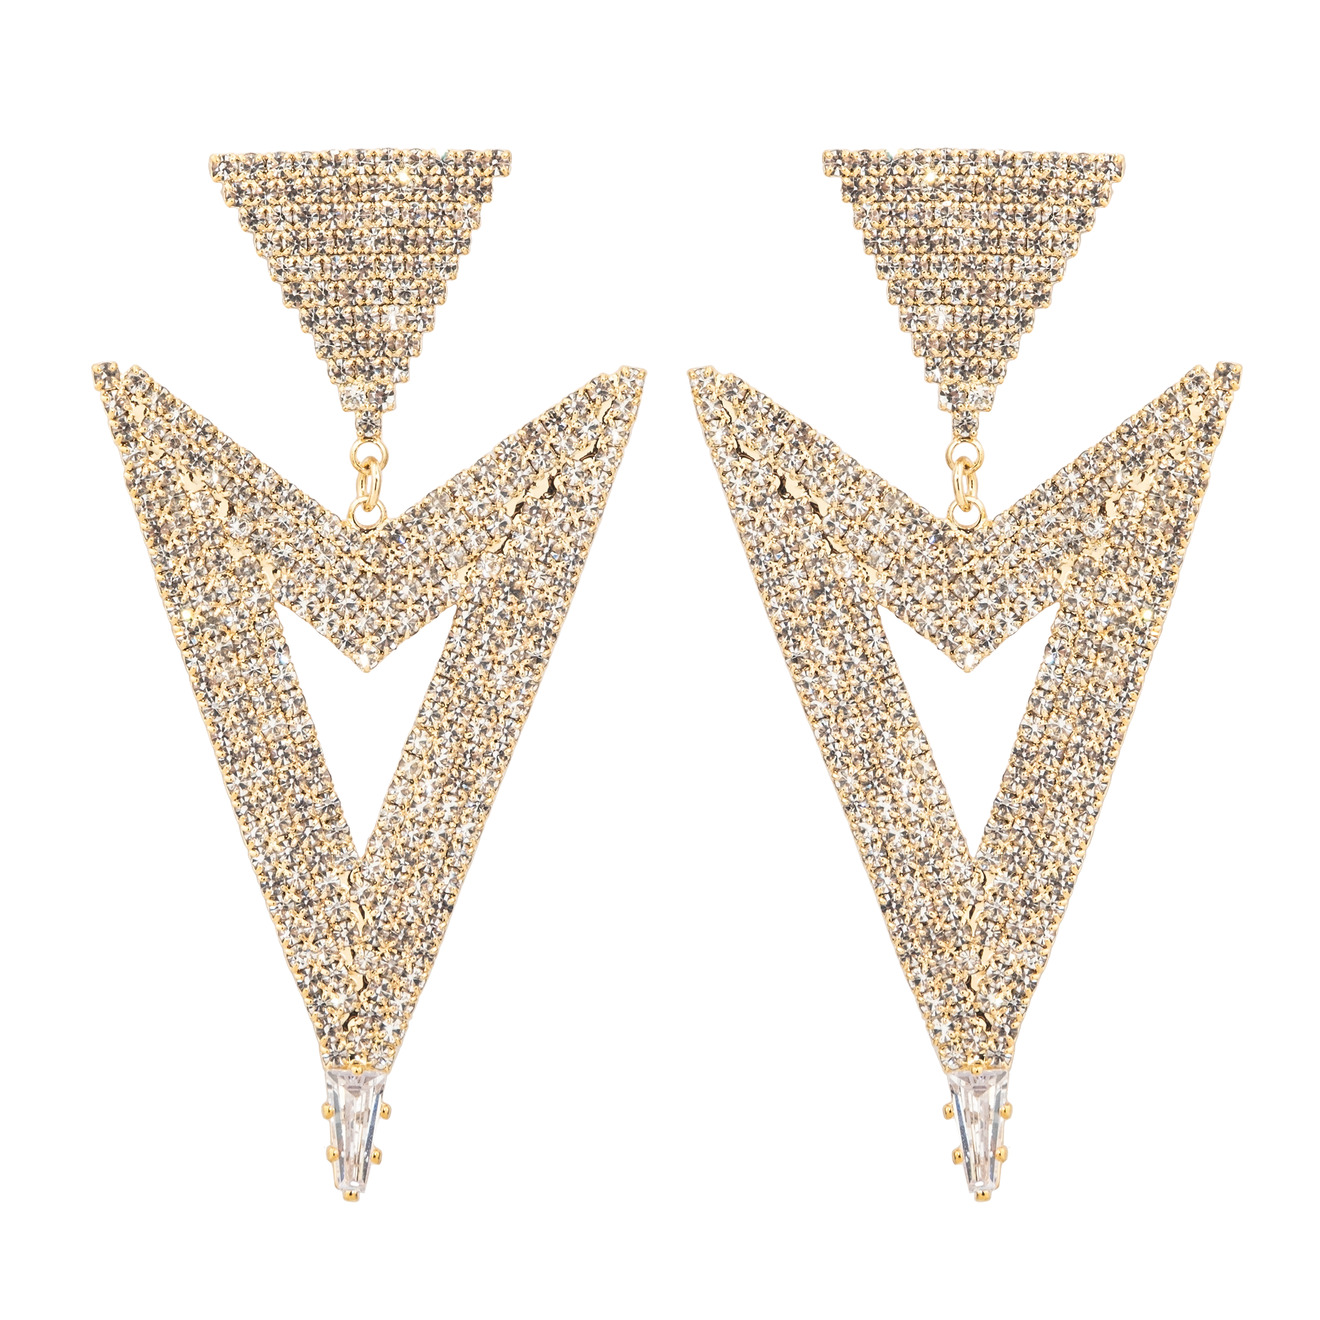 Herald Percy Золотистые серьги-стрелки с кристаллами herald percy золотистые серьги джекеты со звездой